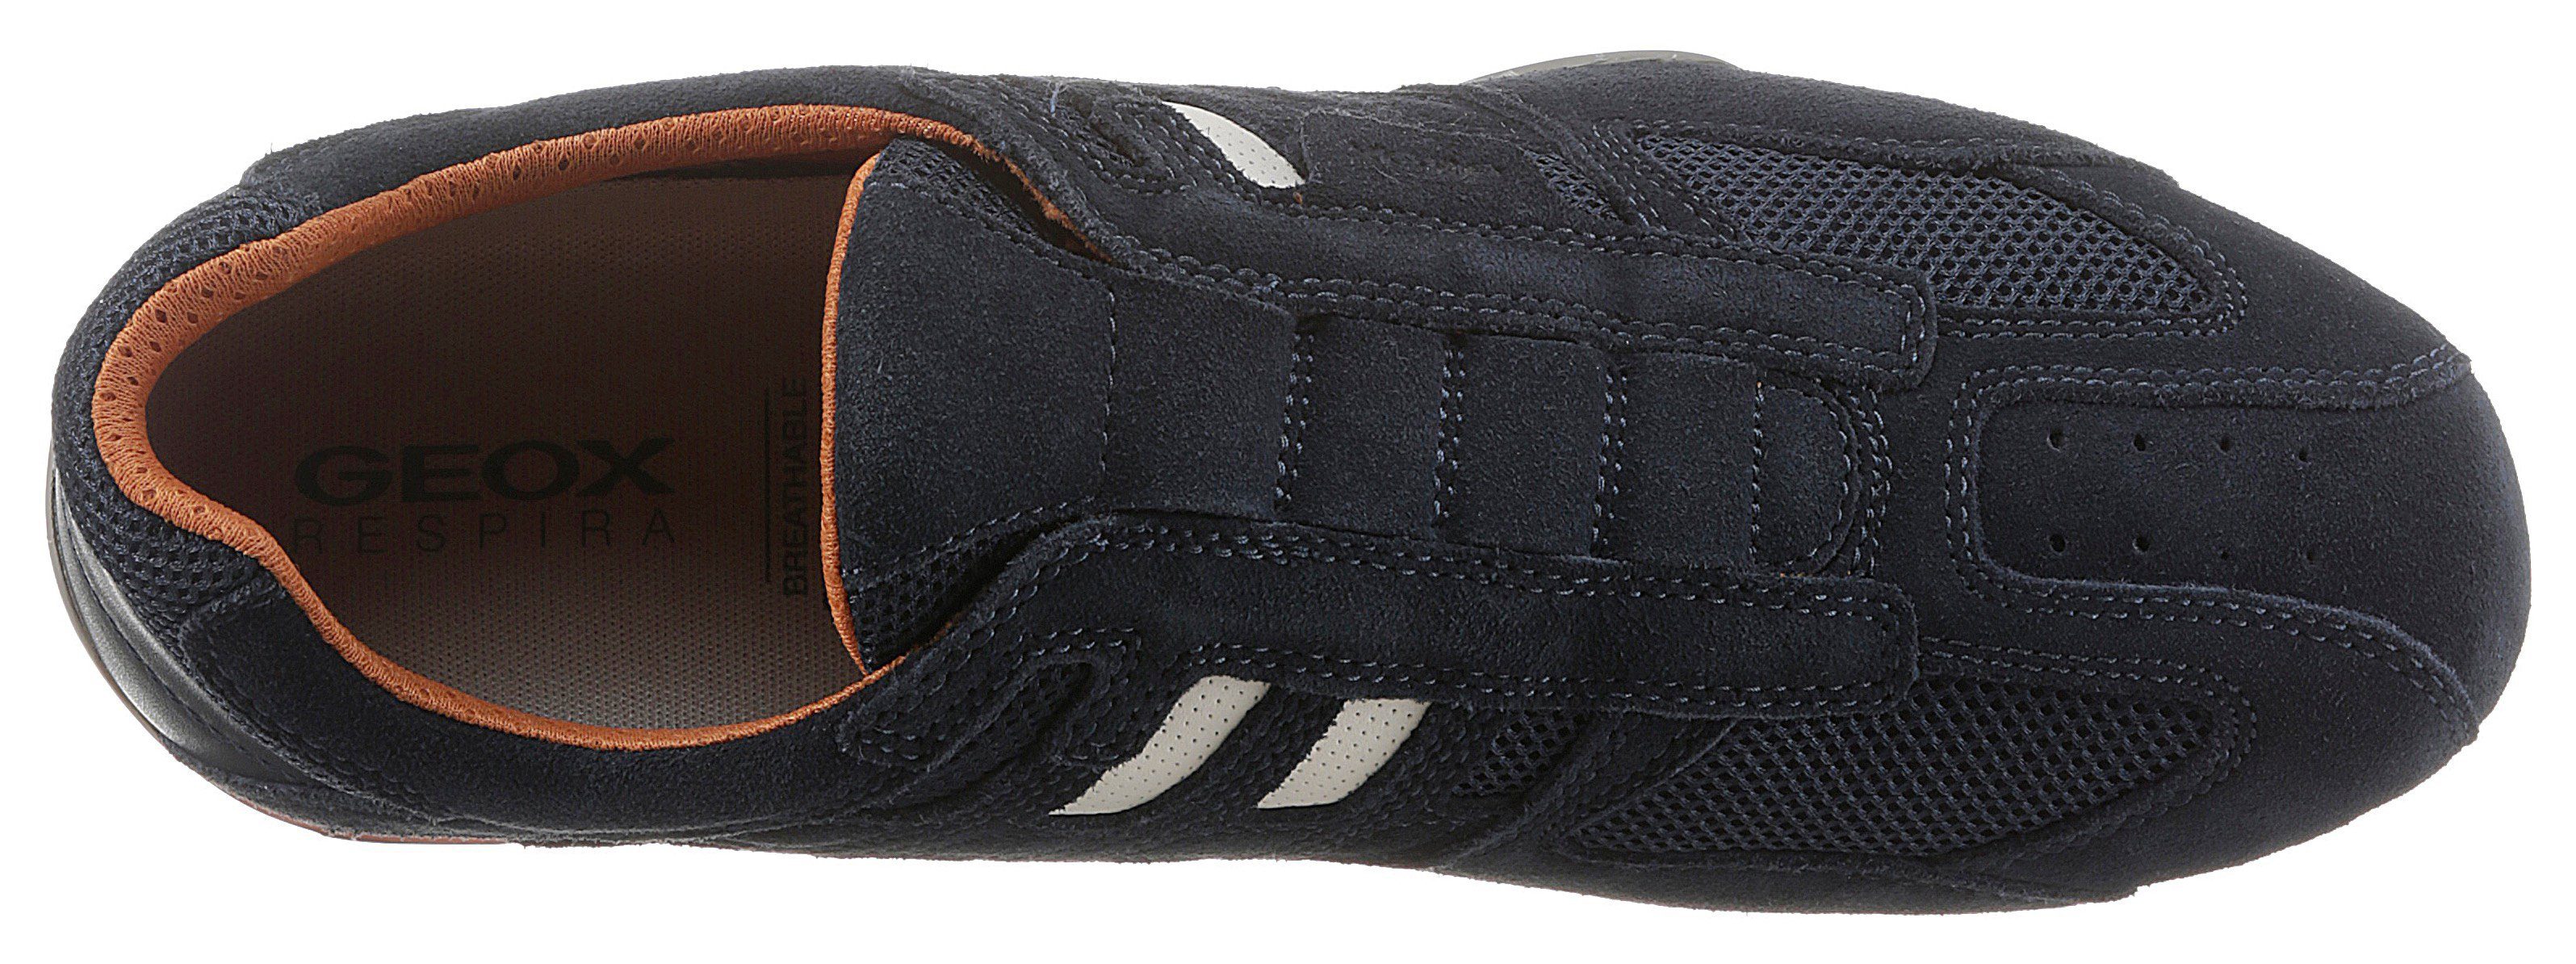 Membrane dunkel-blau UOMO und Geox Sneaker mit Ziernähten Spezial Slip-On SNAKE mit modischen Geox